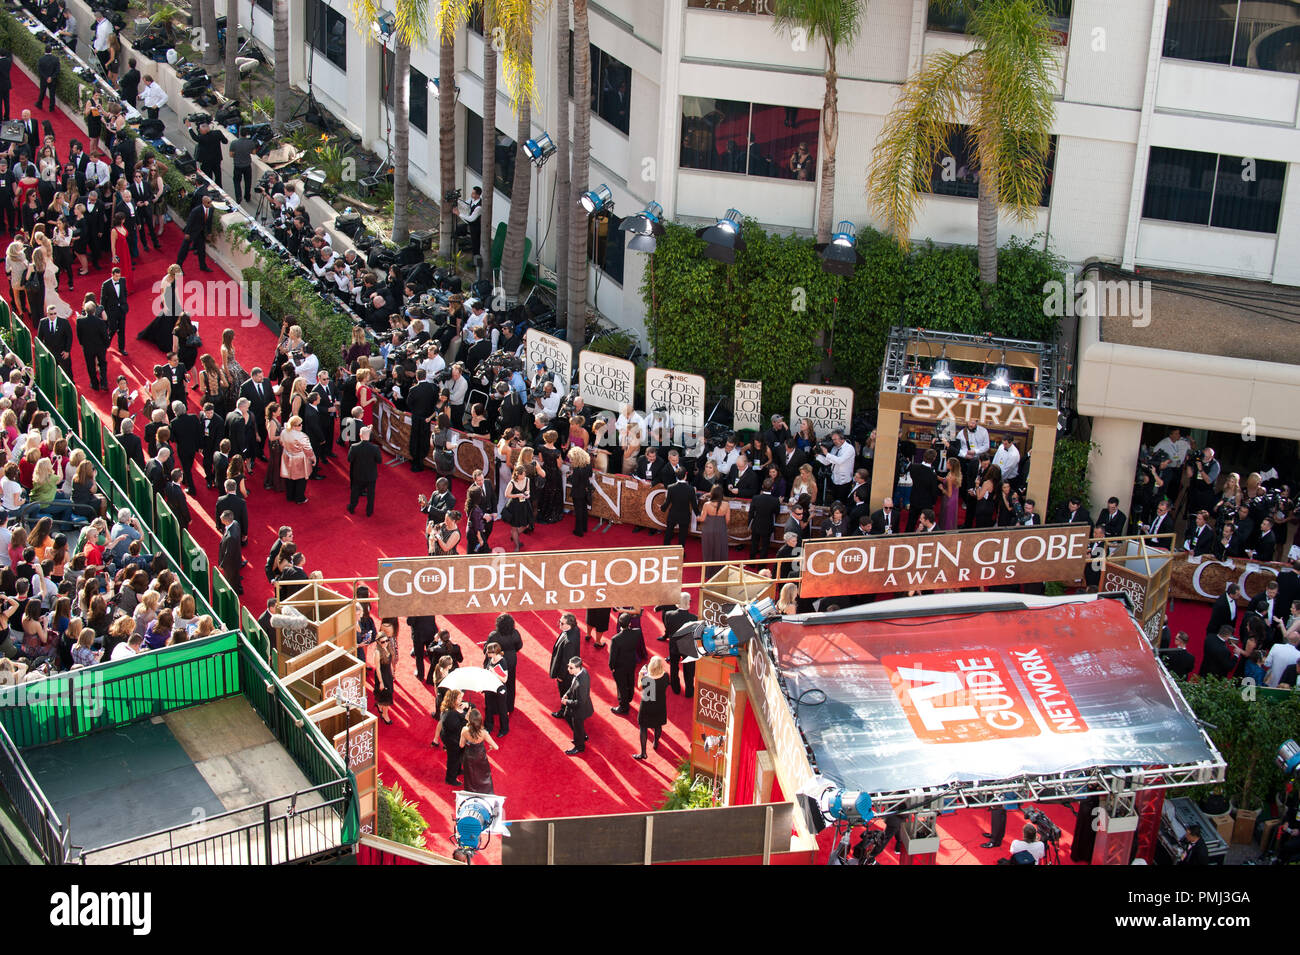 Prominente kommen bei der 68. jährlichen Golden Globe Awards im Beverly Hilton in Beverly Hills, CA am Sonntag, 16. Januar 2011. Datei Referenz # 30825 622 Nur für den redaktionellen Gebrauch - Alle Rechte vorbehalten Stockfoto